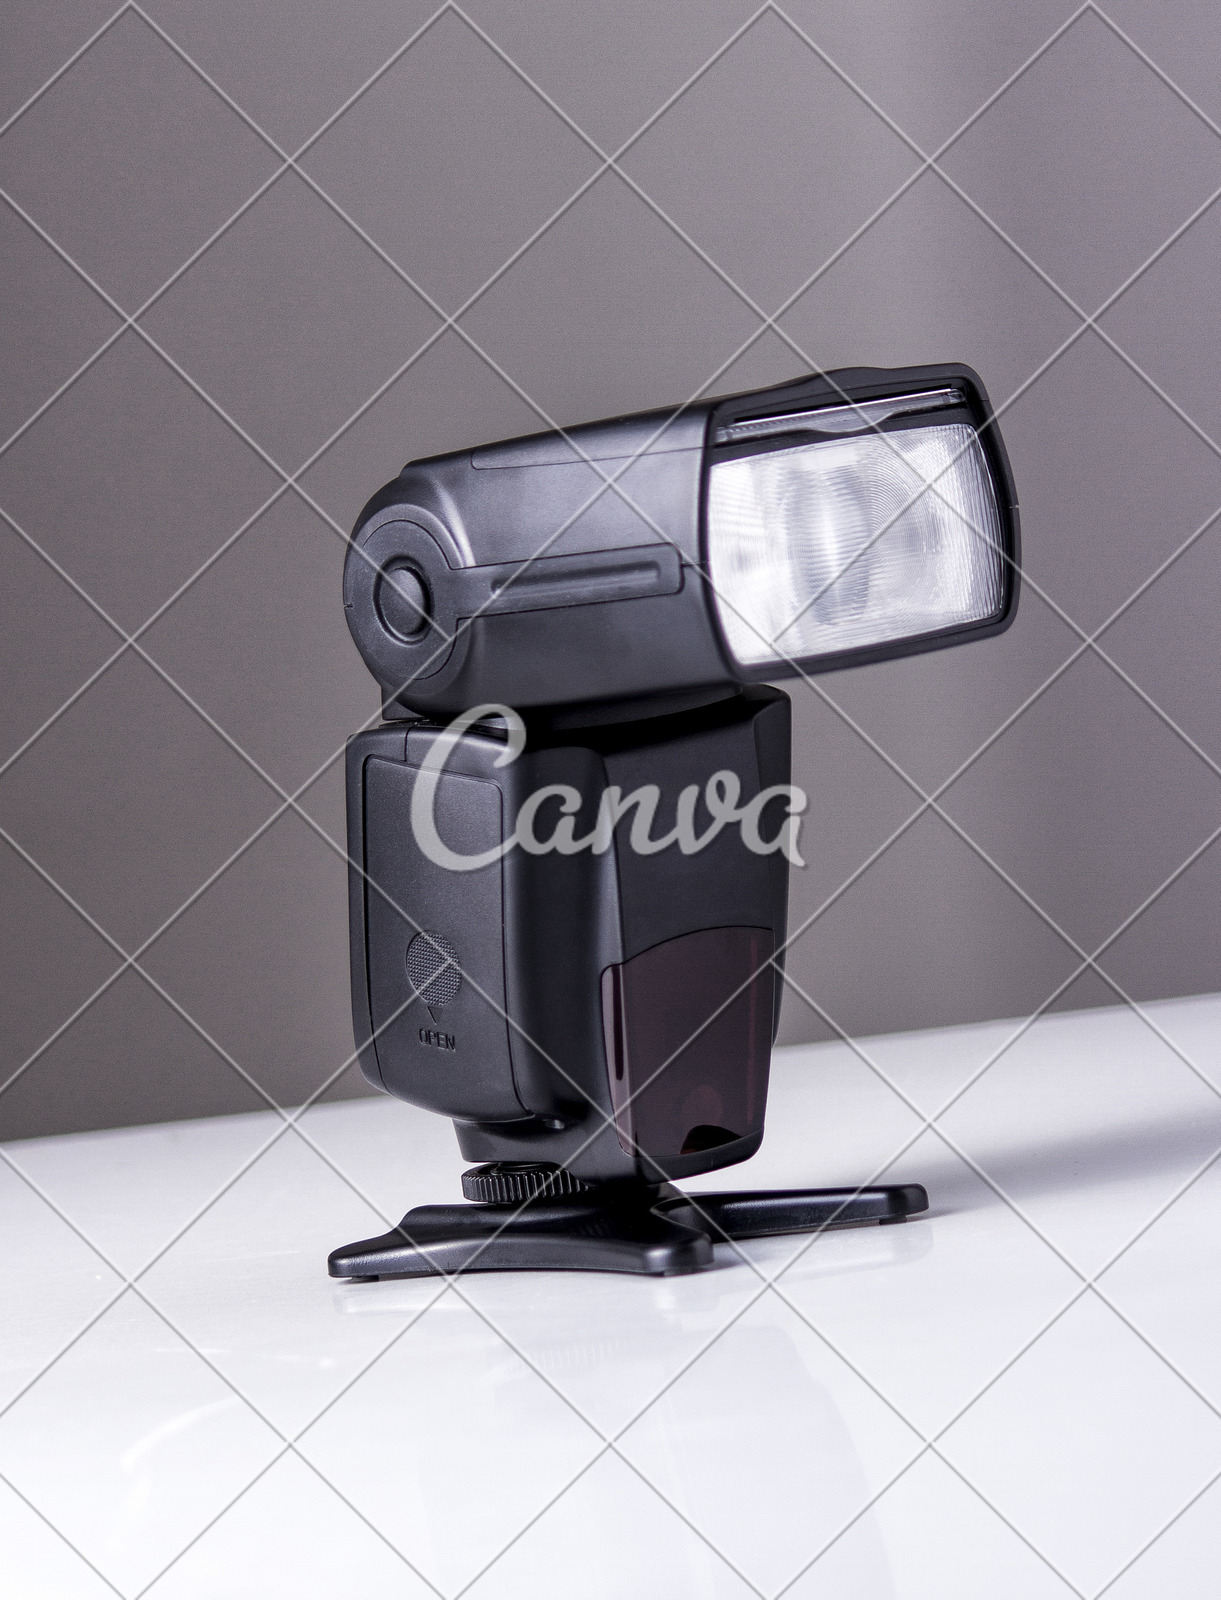 户外相机闪光灯移动式照明设备摄影图片